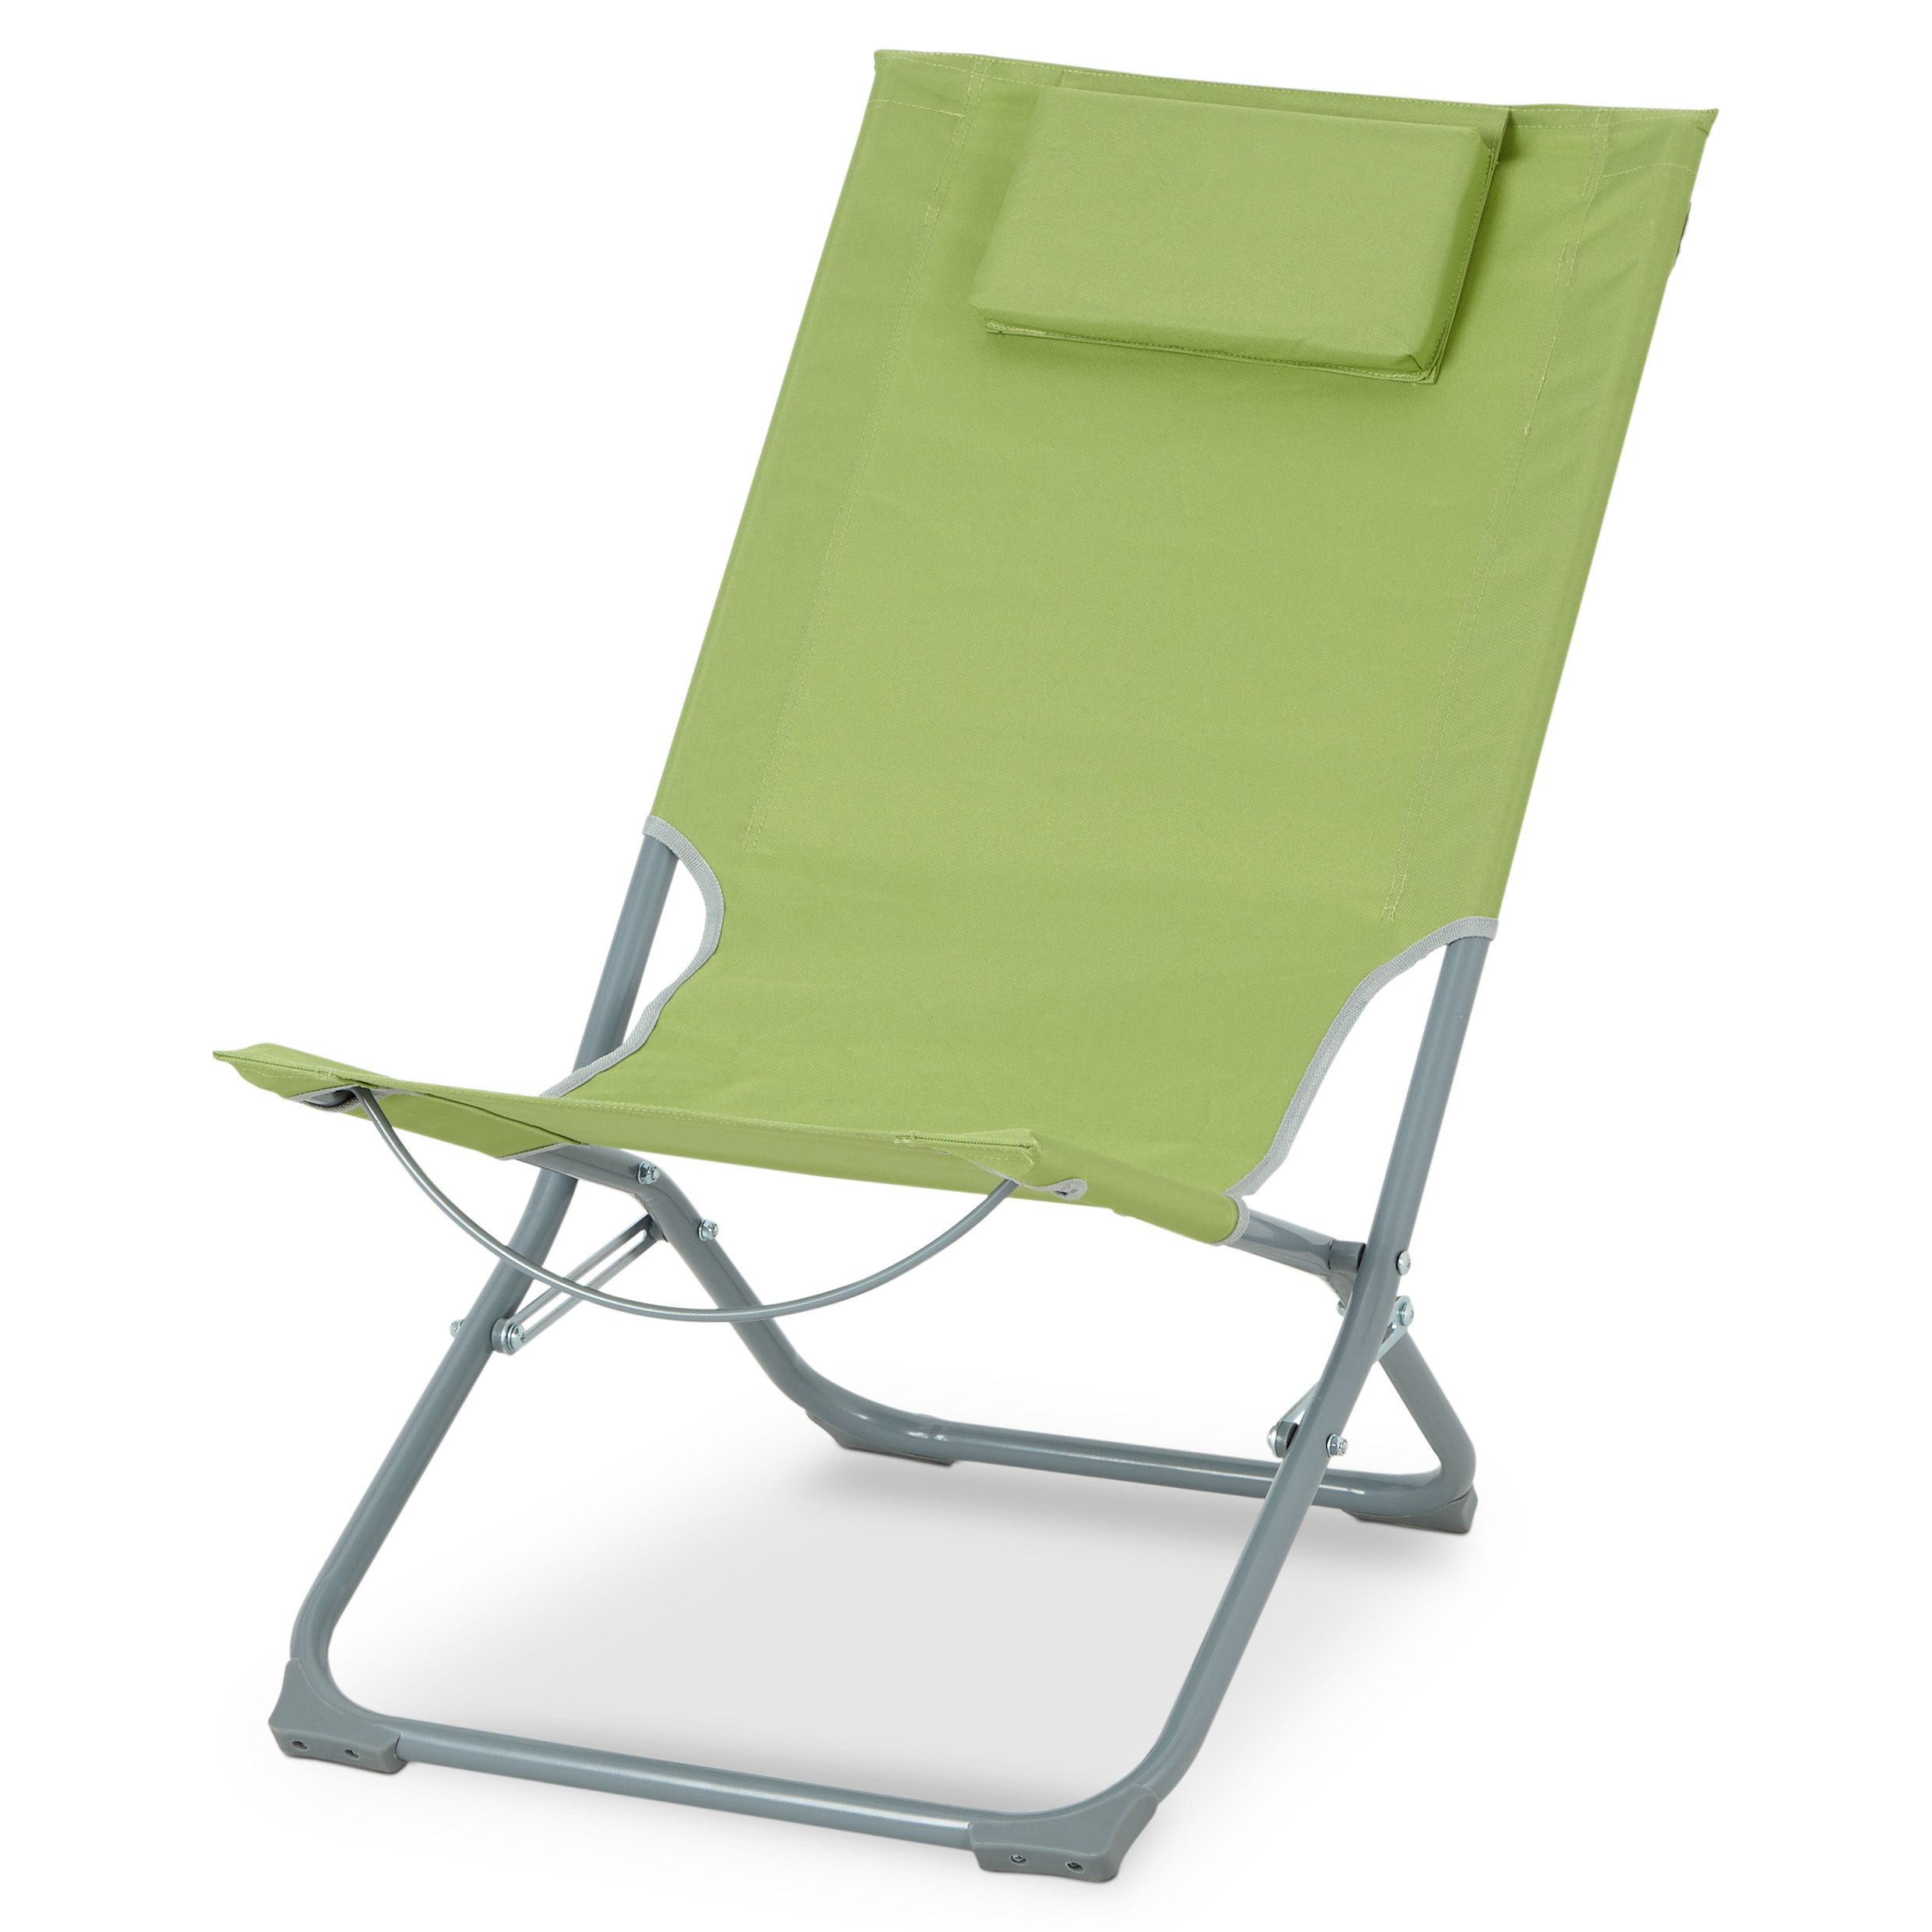 Curacao Green Metal Beach Chair